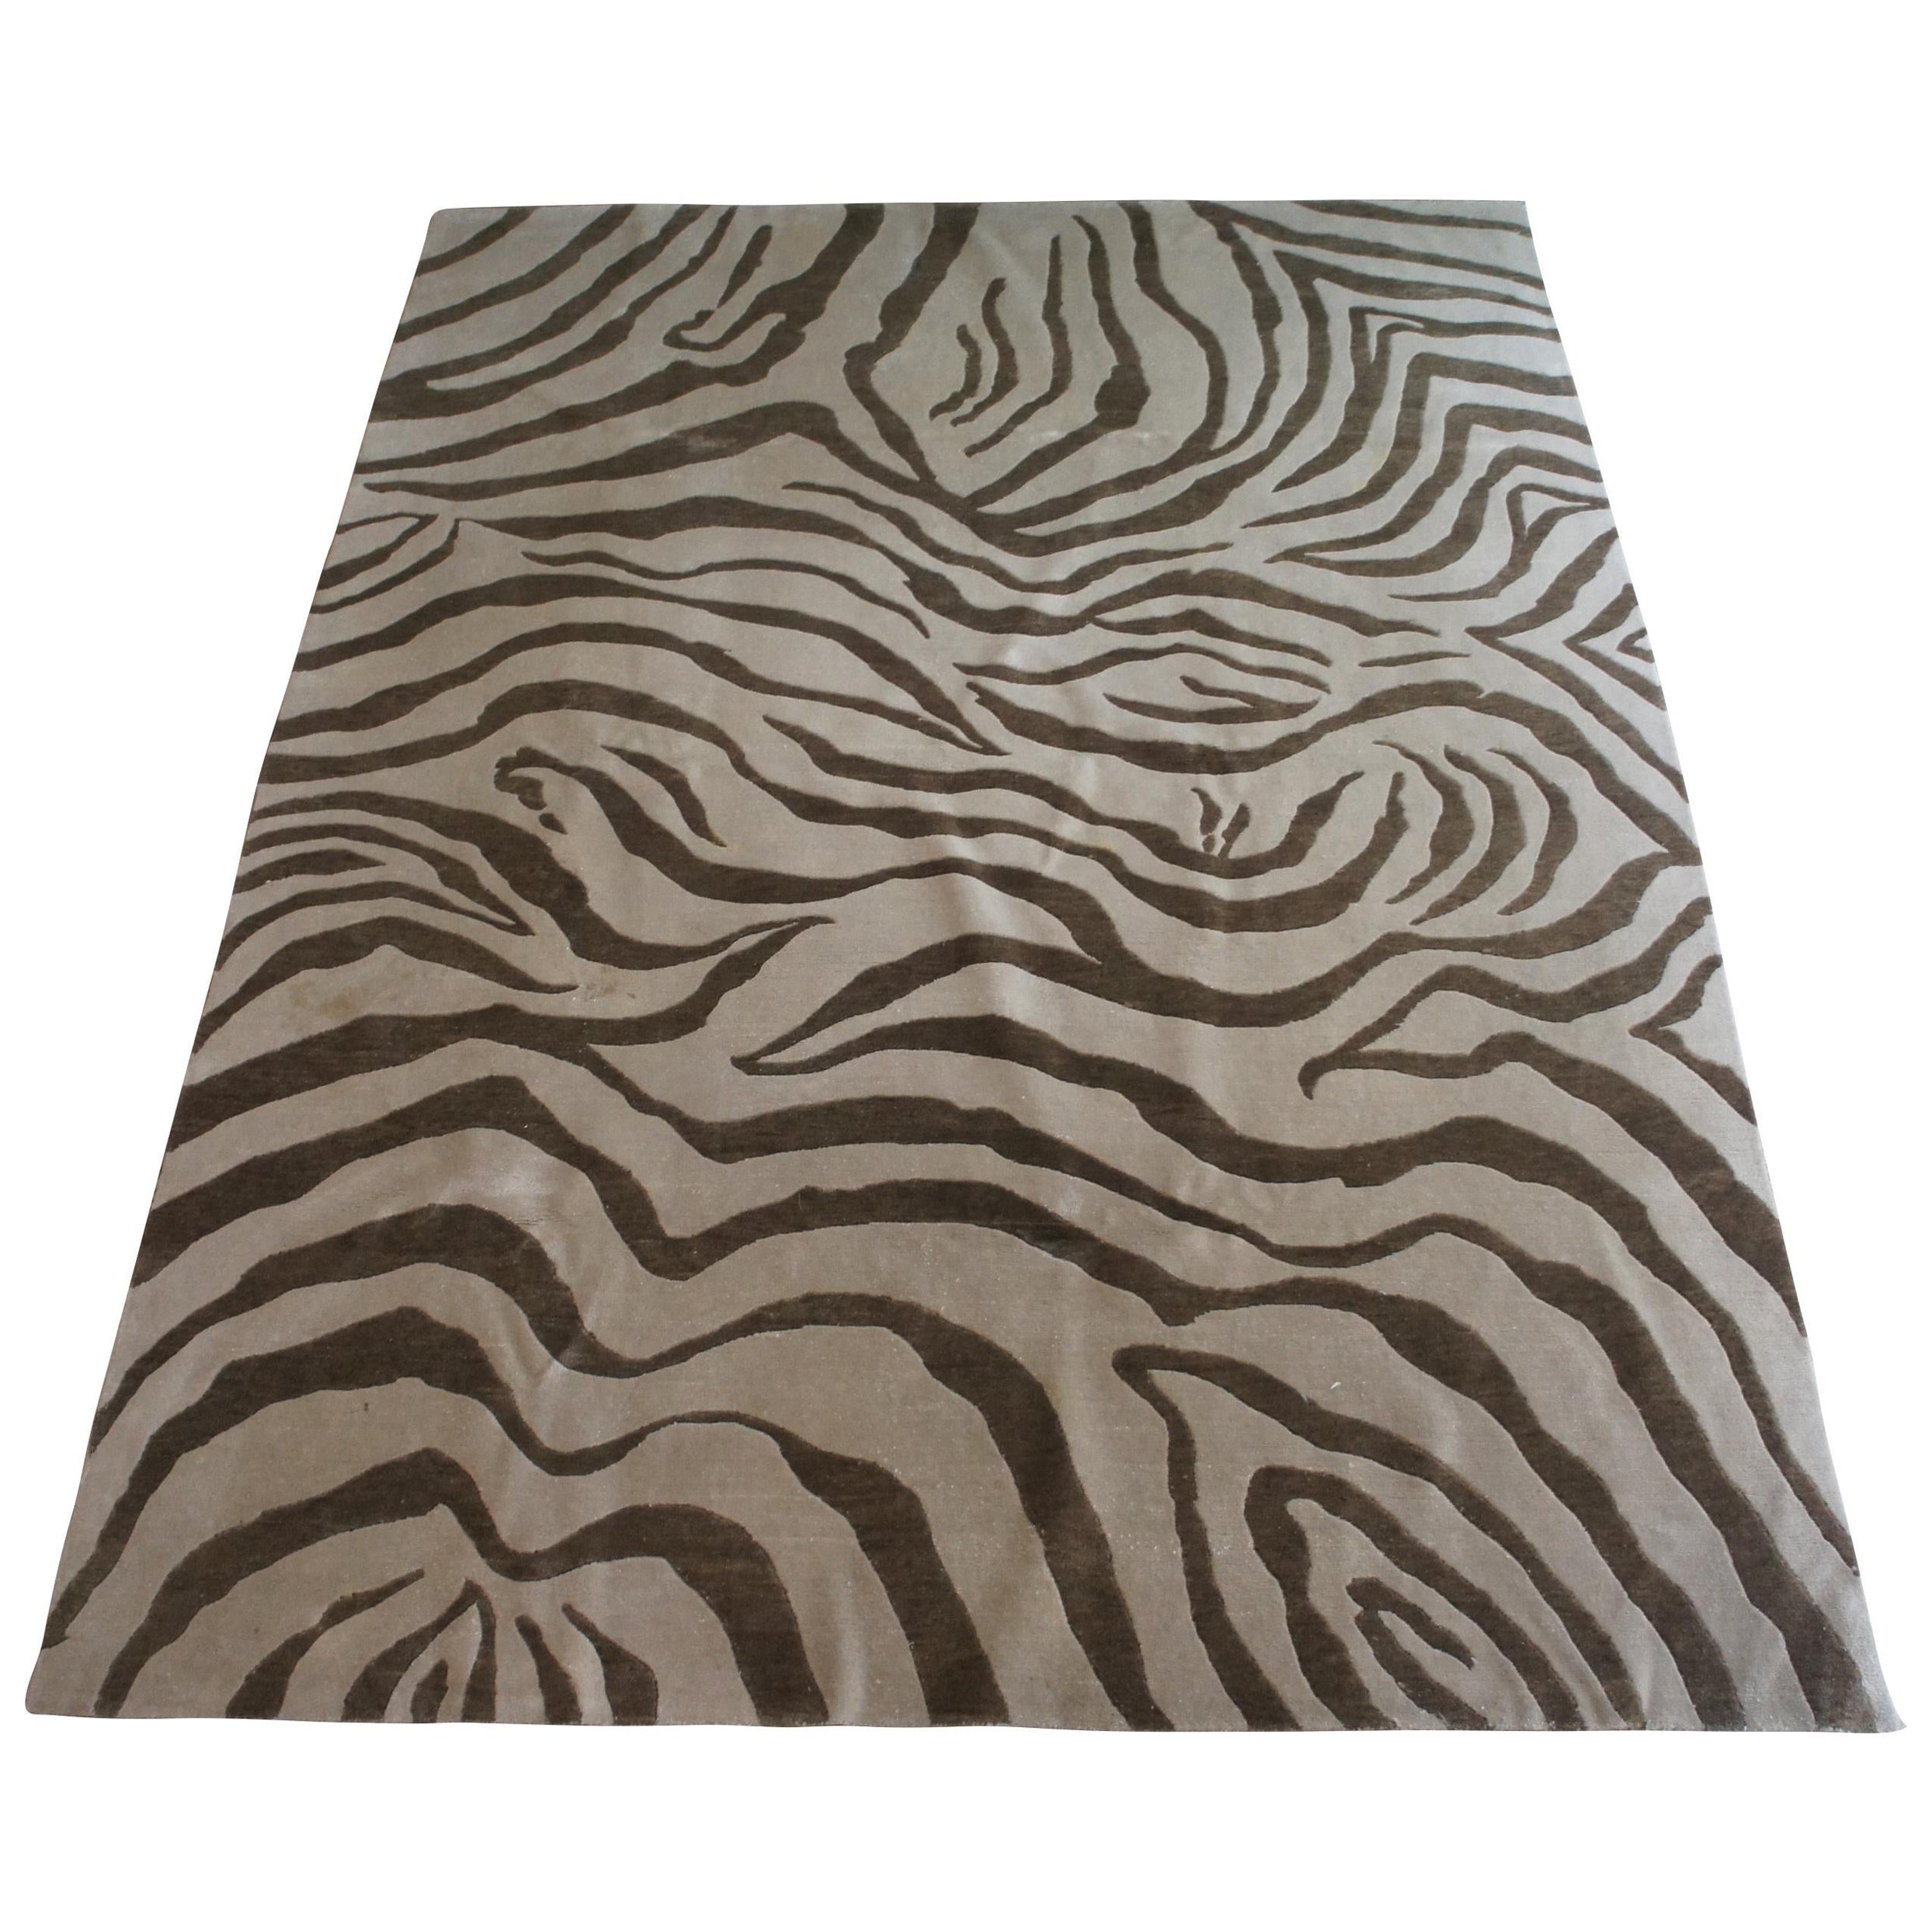 Vintage Animal Print Modern Brown & Beige Zebra Are Rug Carpet 8' x 11'  For Sale